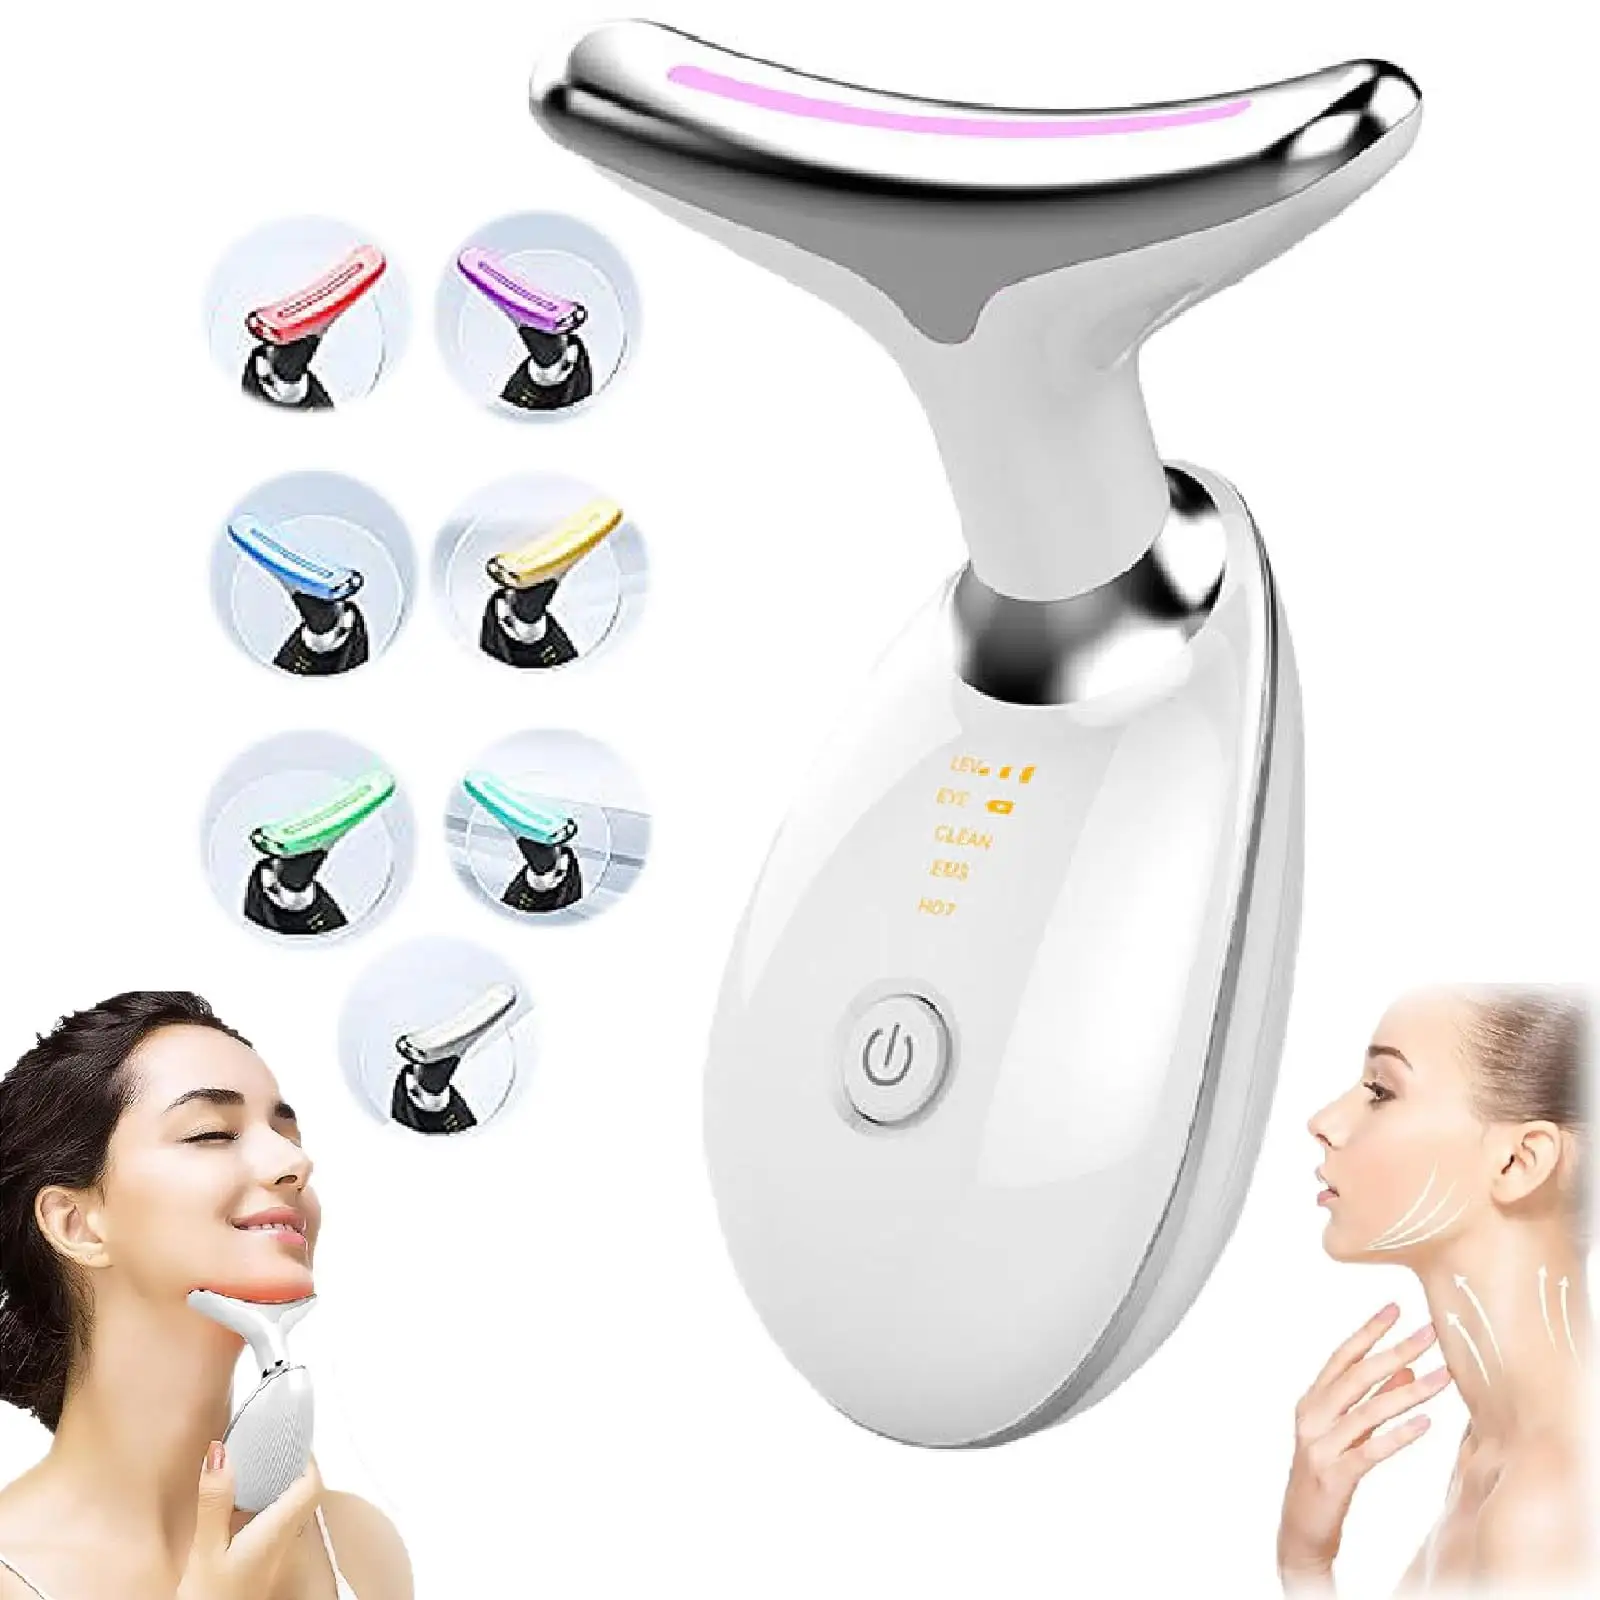 Neue schönheit und körperpflege beste produkte led gesichtsmassage elektrische heiße massage gesichtslifting maschine schönheit